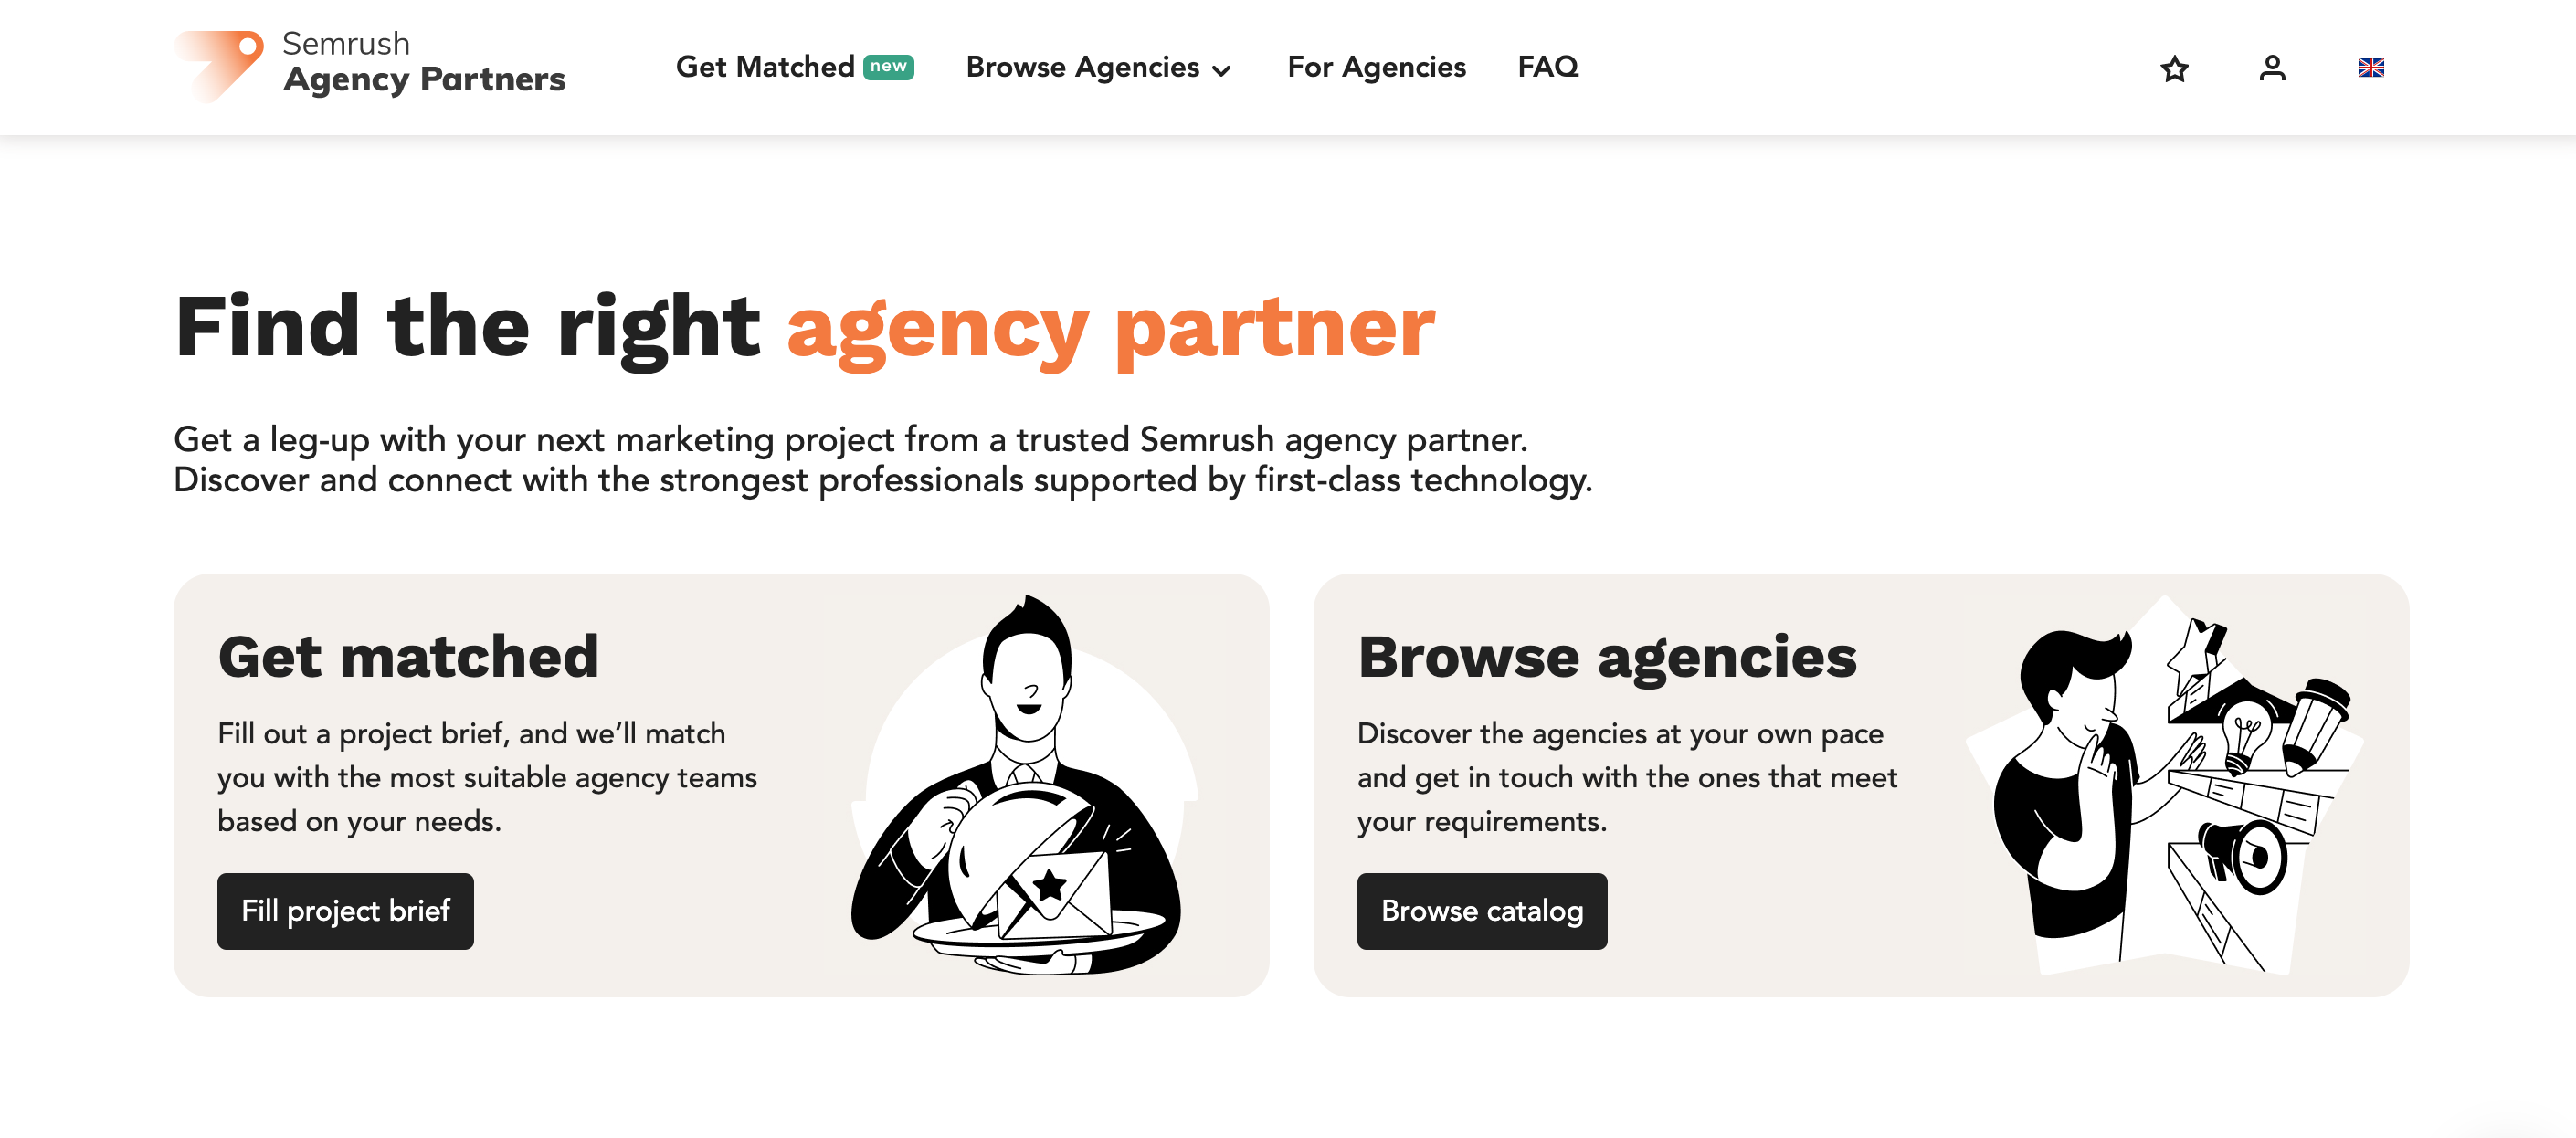 L'home page della piattaforma Agency Partner mostrante i pulsanti per compilare un brief di progetto e ricevere contatti o navigare il catalogo delle agenzie. 